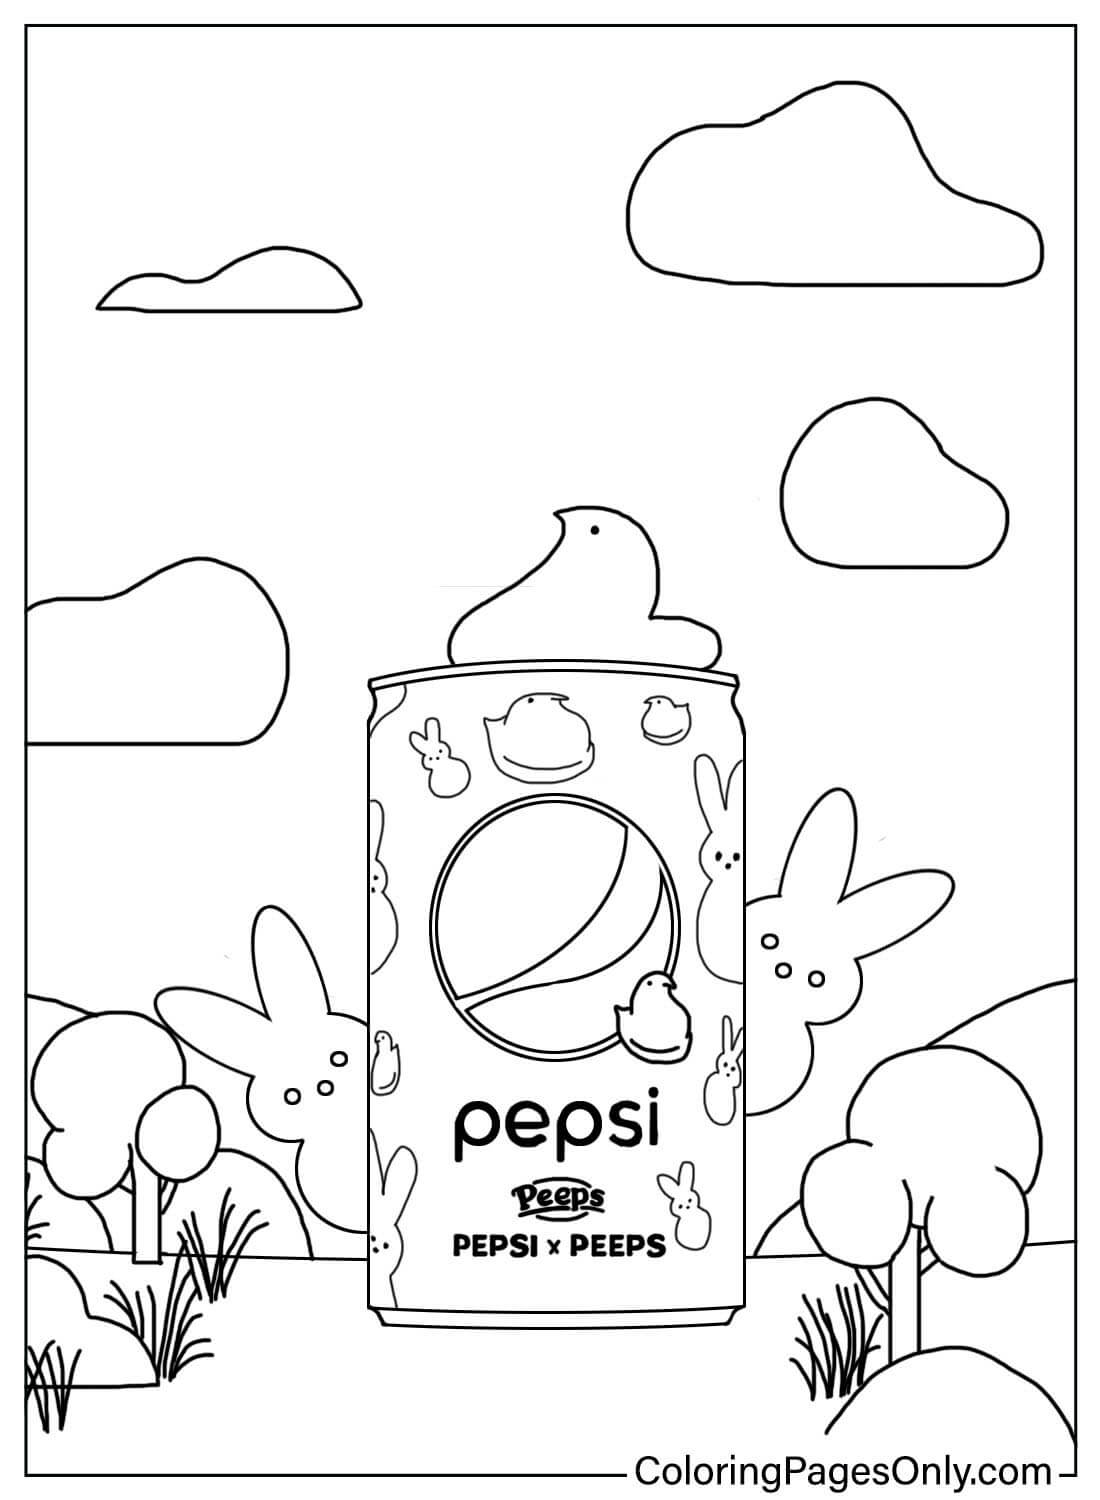 Peeps en Pepsi van Peeps